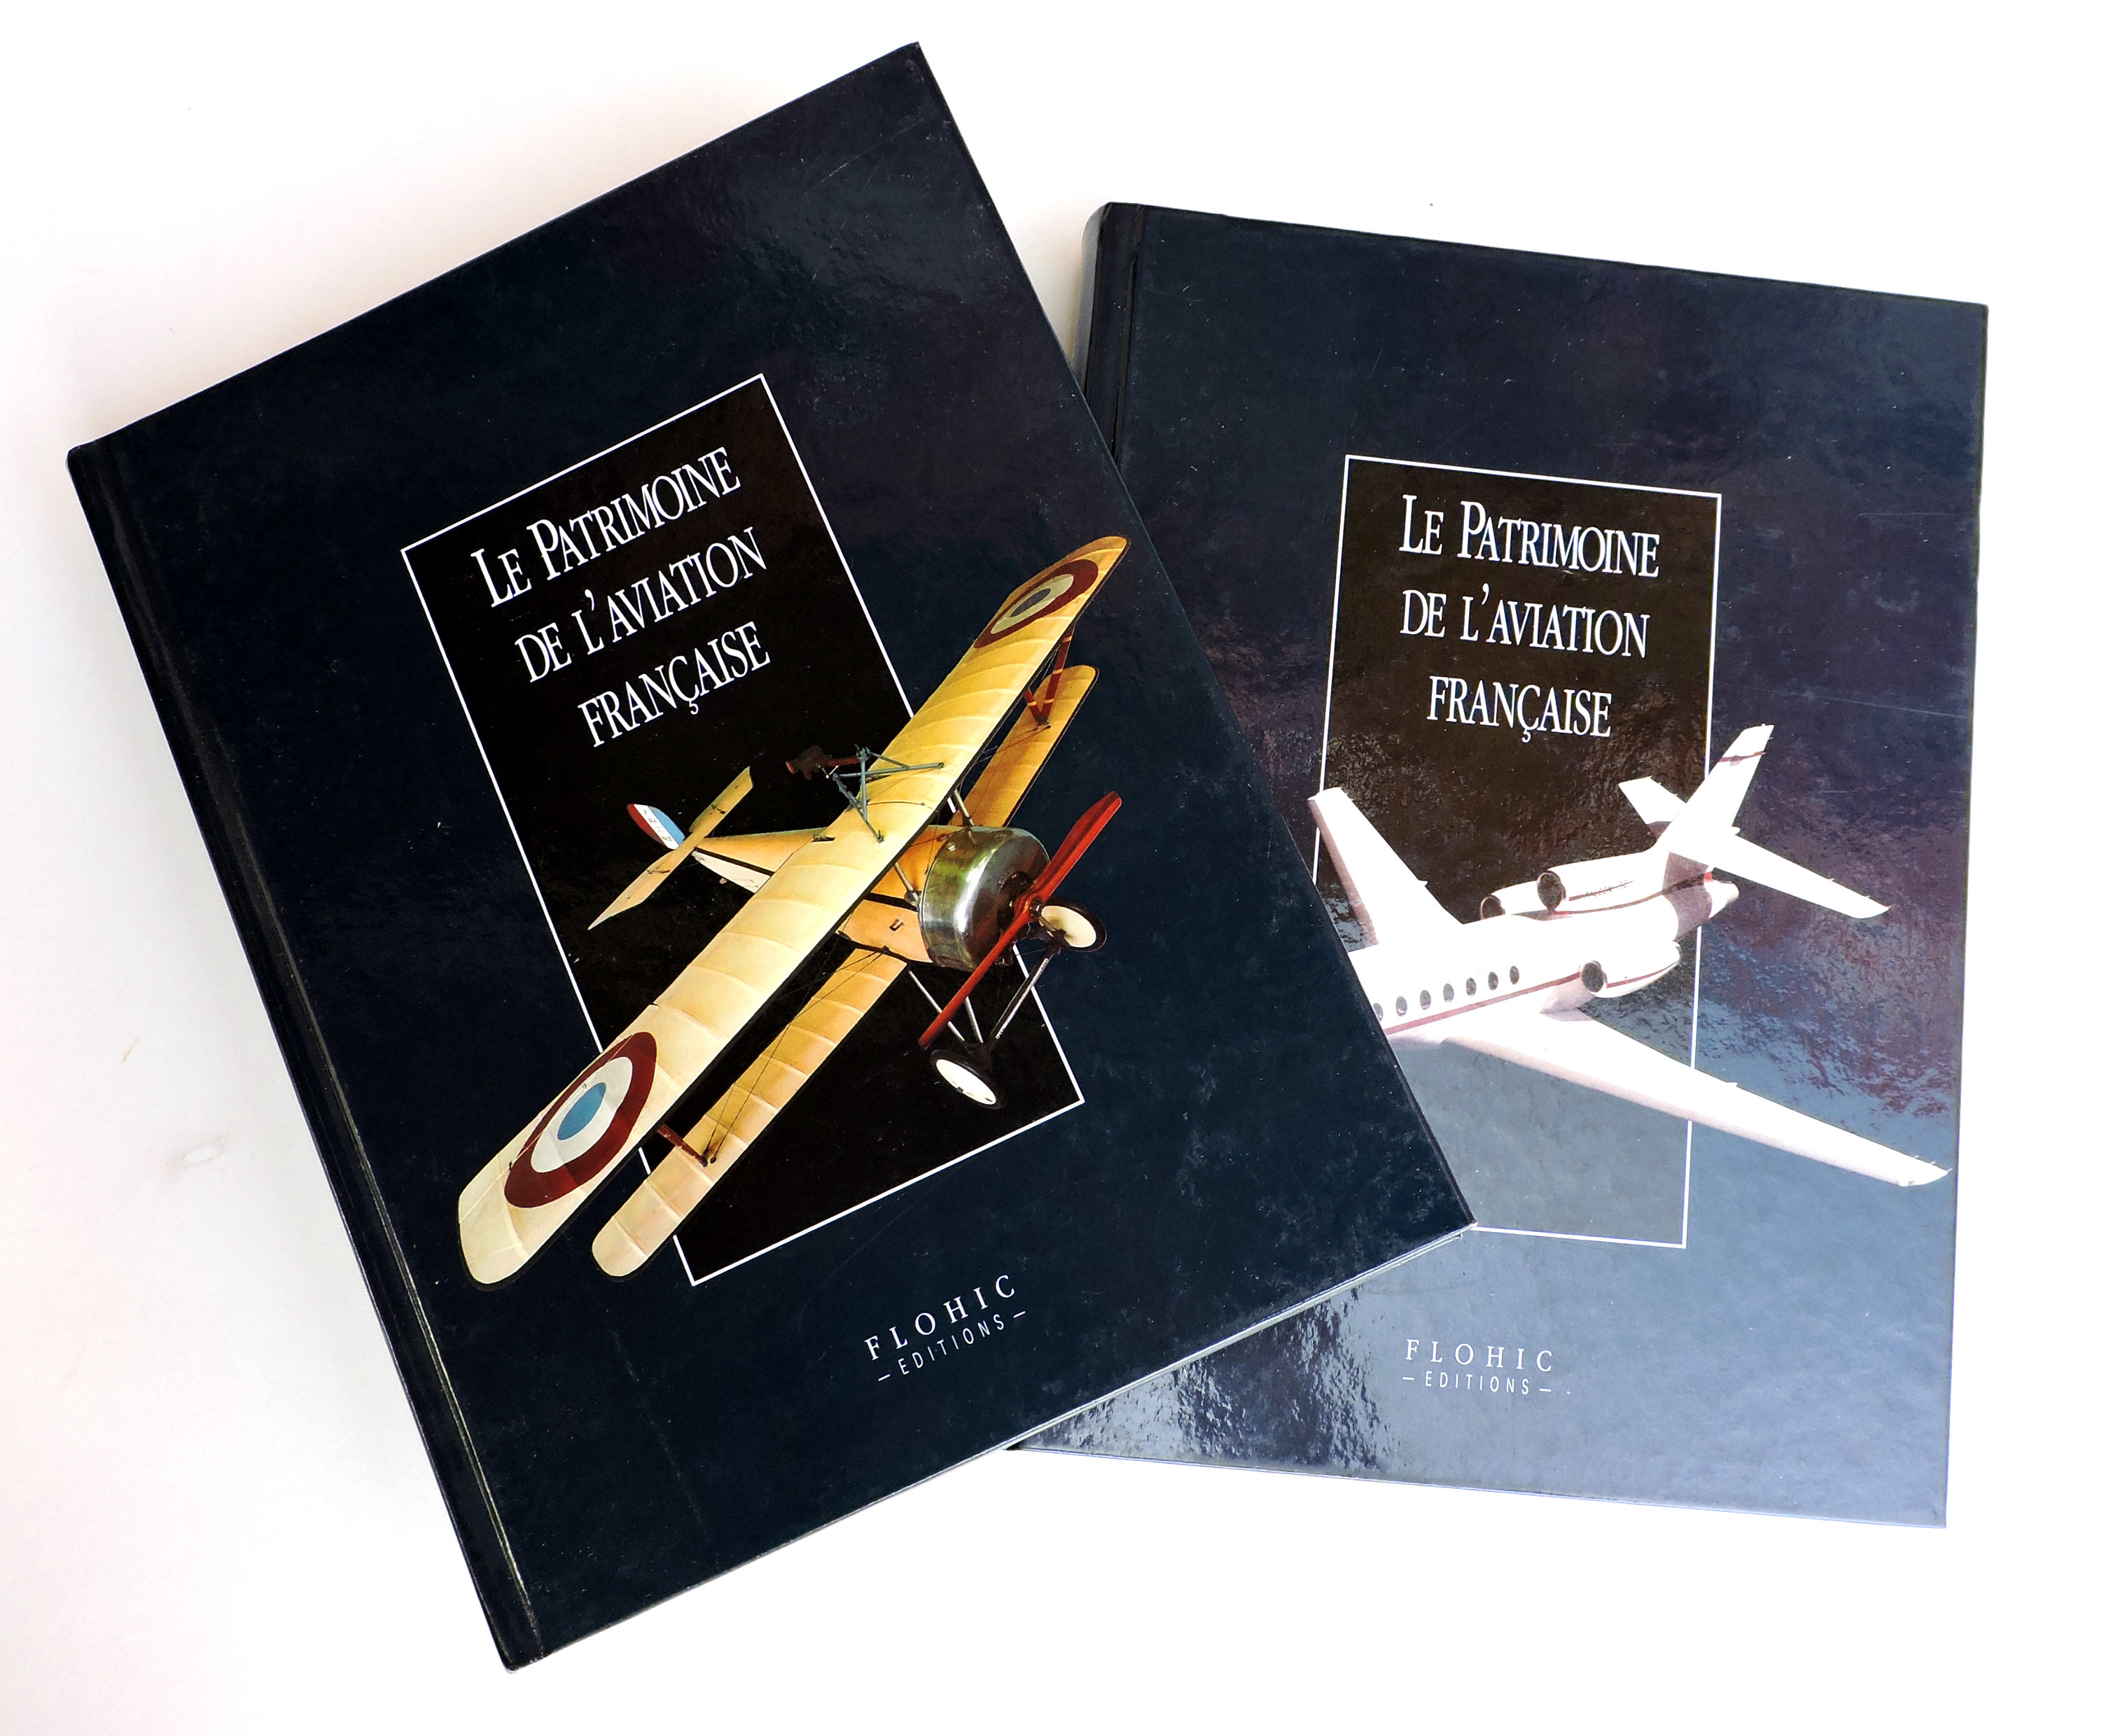 Le patrimoine de l'aviation francaise Deux tomes Flohic éditions